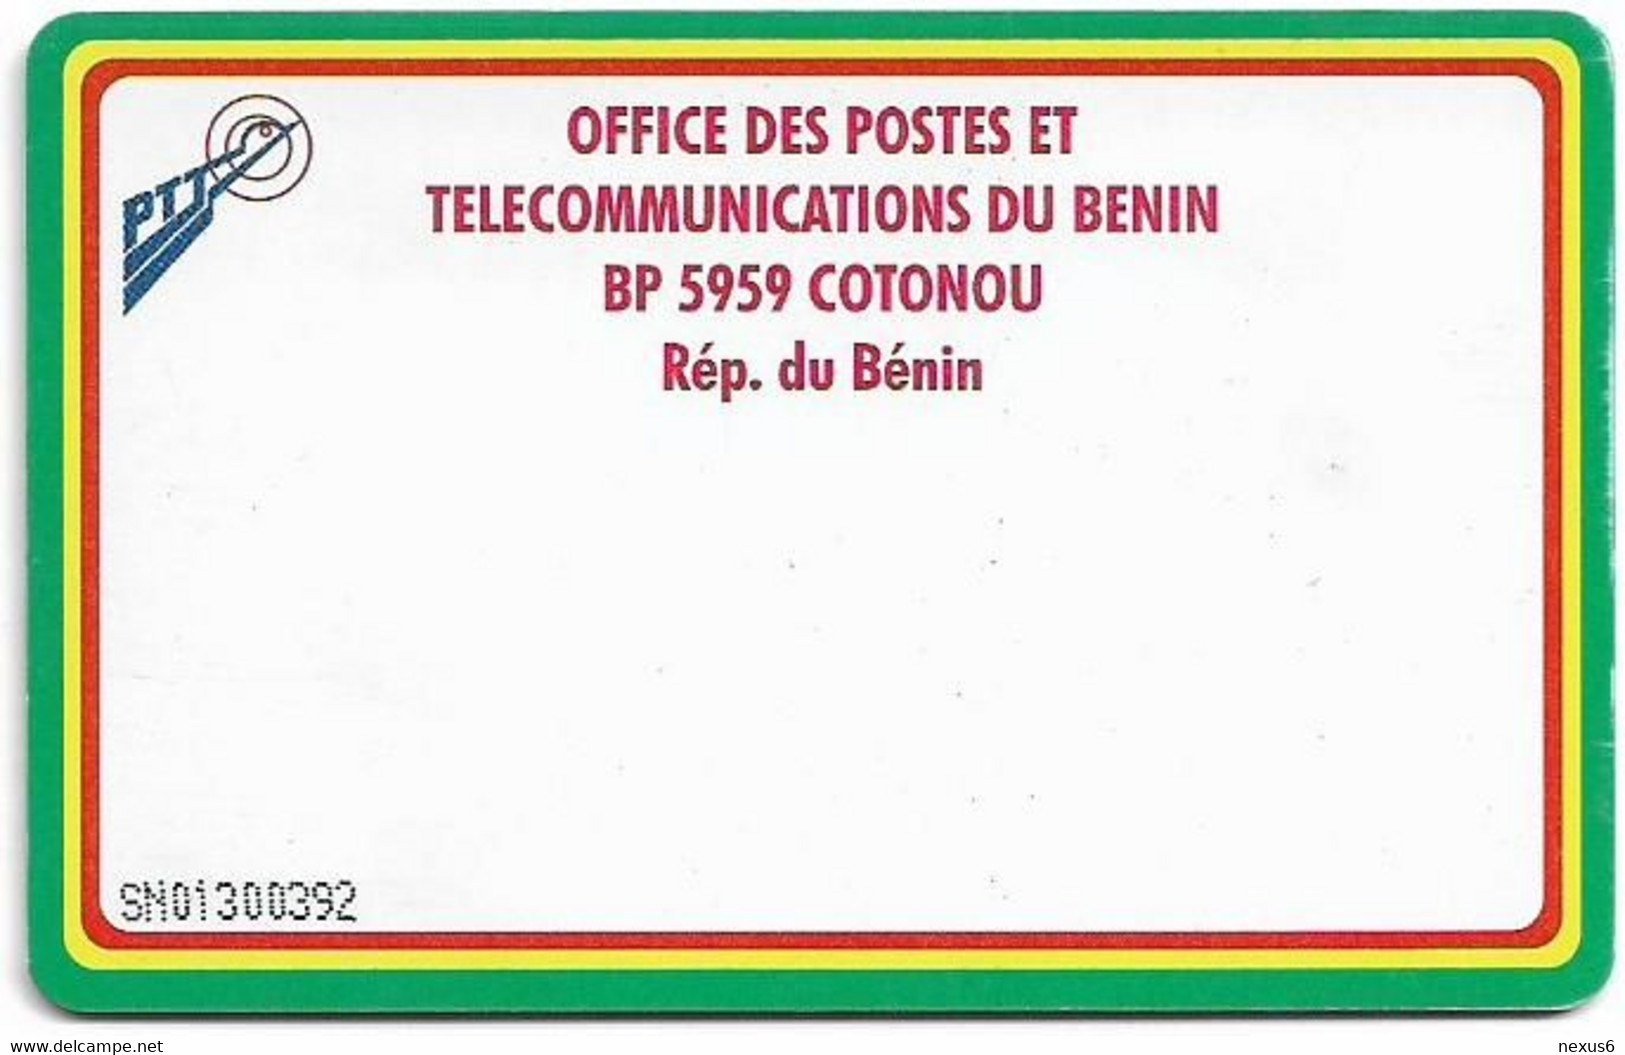 Benin - PTT (Chip) - CPM (Reverse White), Cn. At Center Bottom, Chip Thomson 4, 30Units, Used - Benin